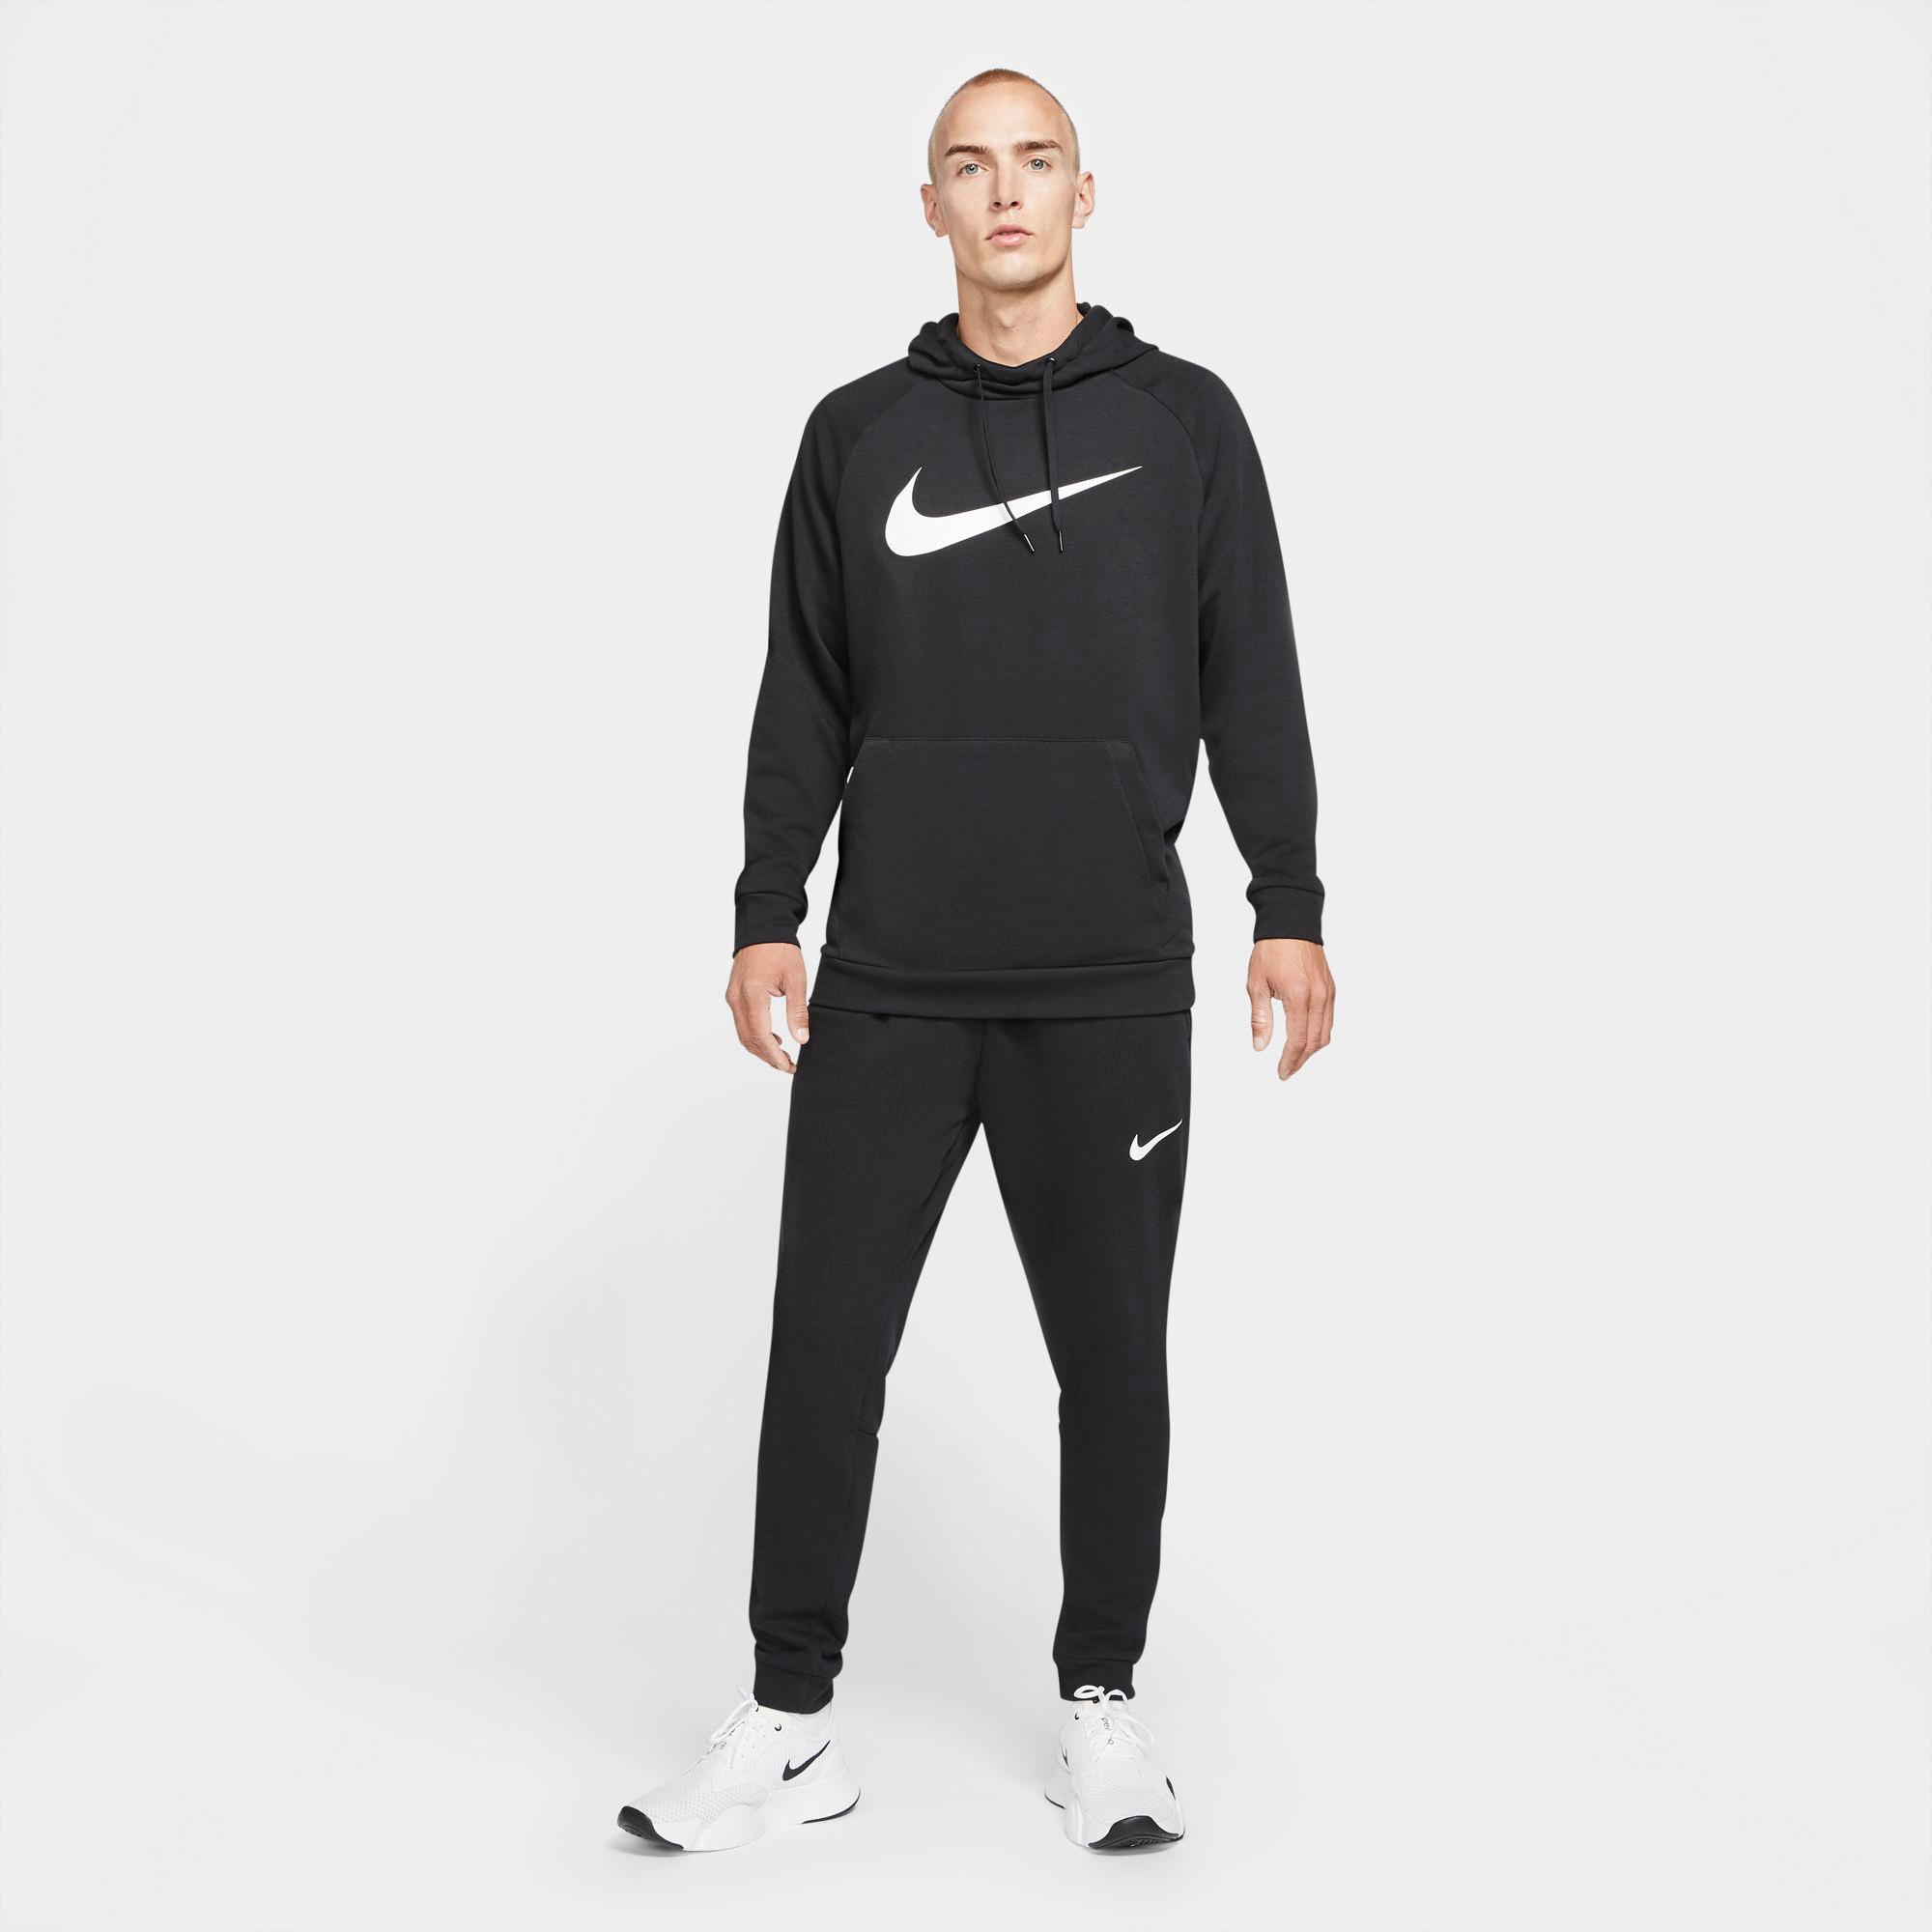 Nike Dry Trainingshose Herren black-white im Online Shop von SportScheck kaufen